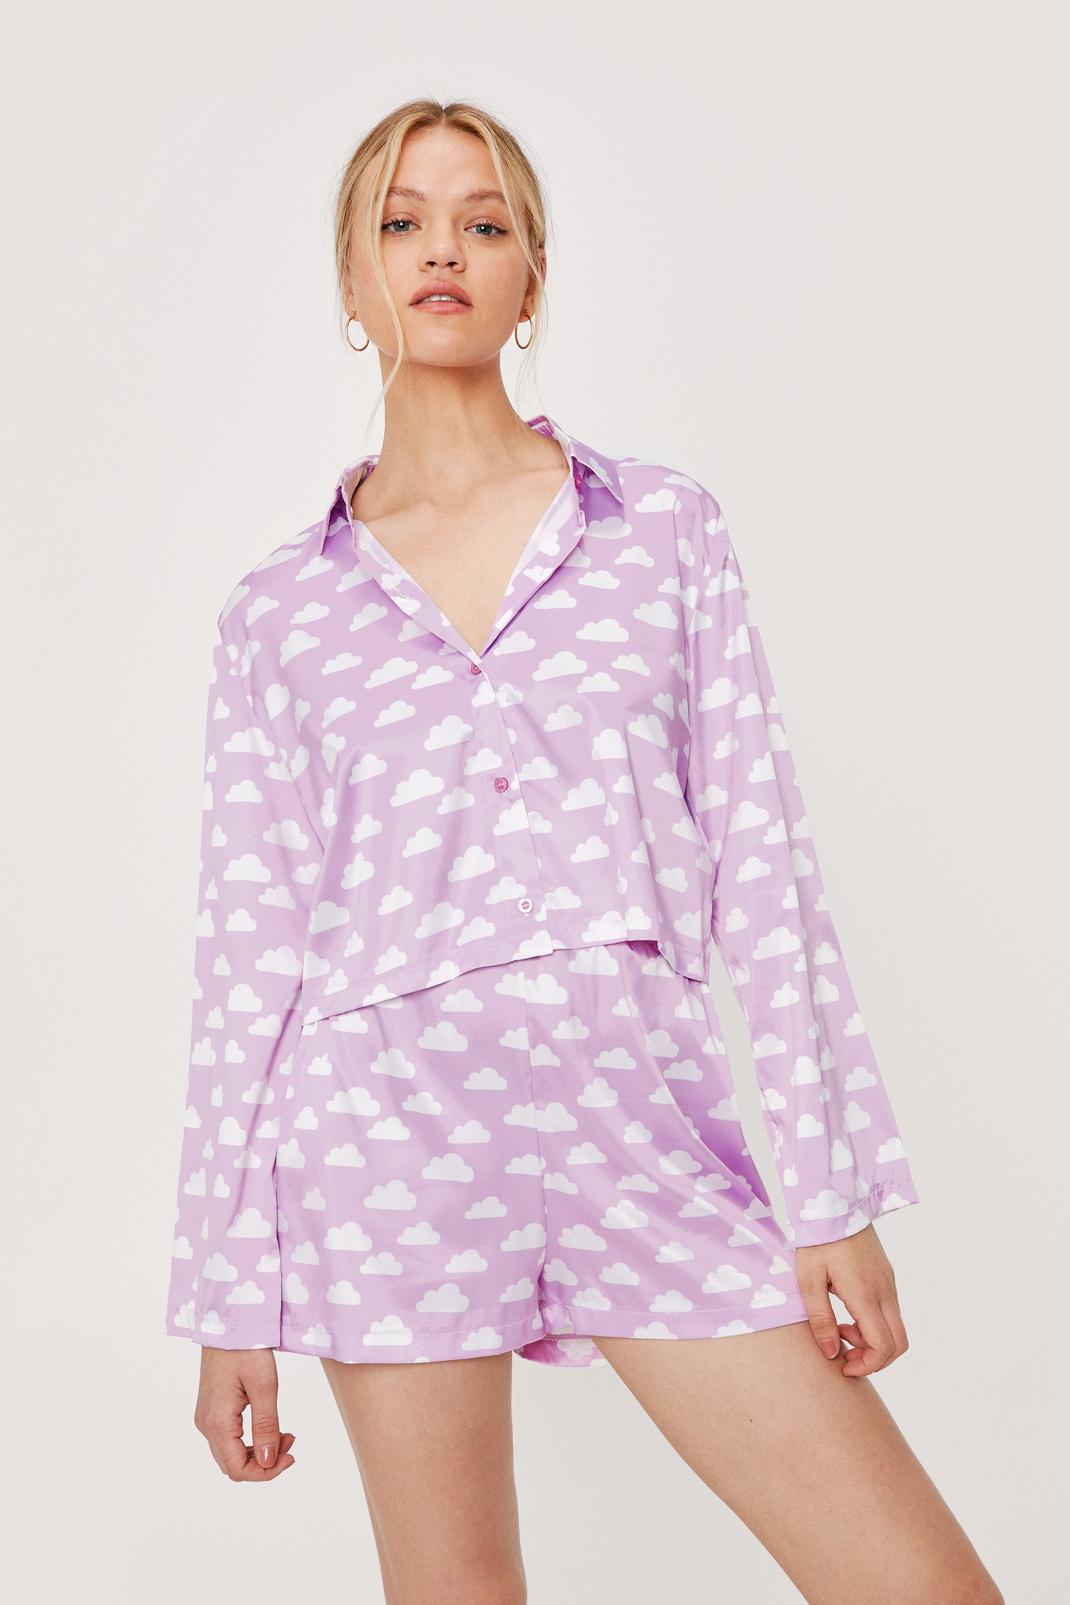 Lilac Satin Cloud Print Pajama Shirt and Short Set image number 1